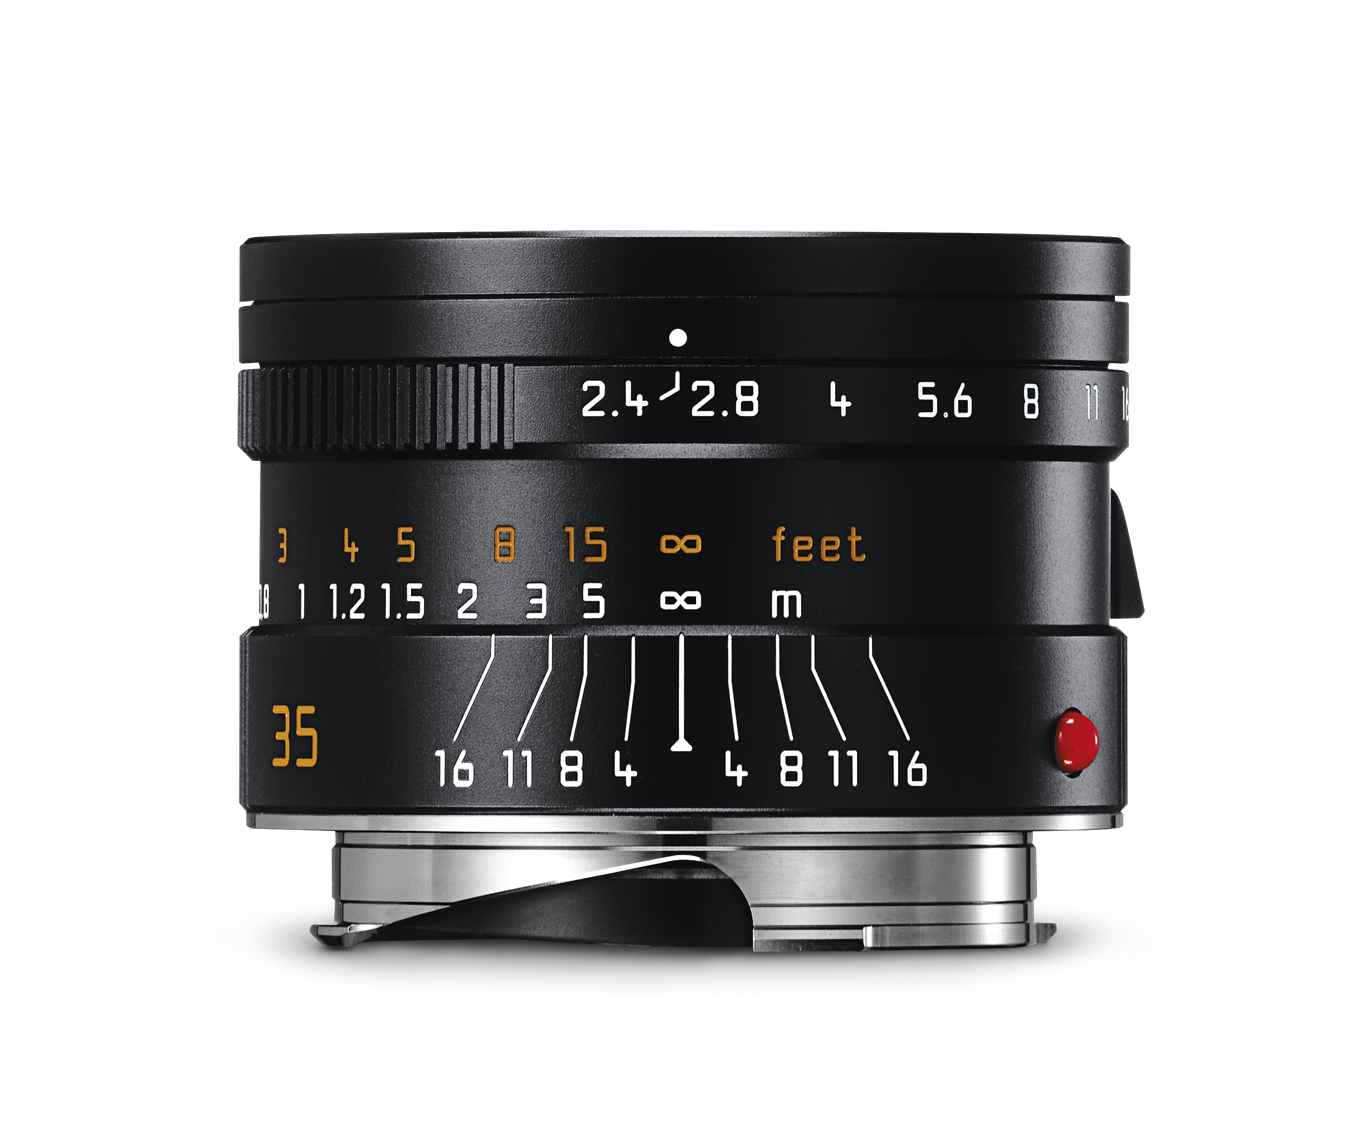 ライカ ズマリットM f2.4/35mm ASPH. ブラック | Leica Camera JP